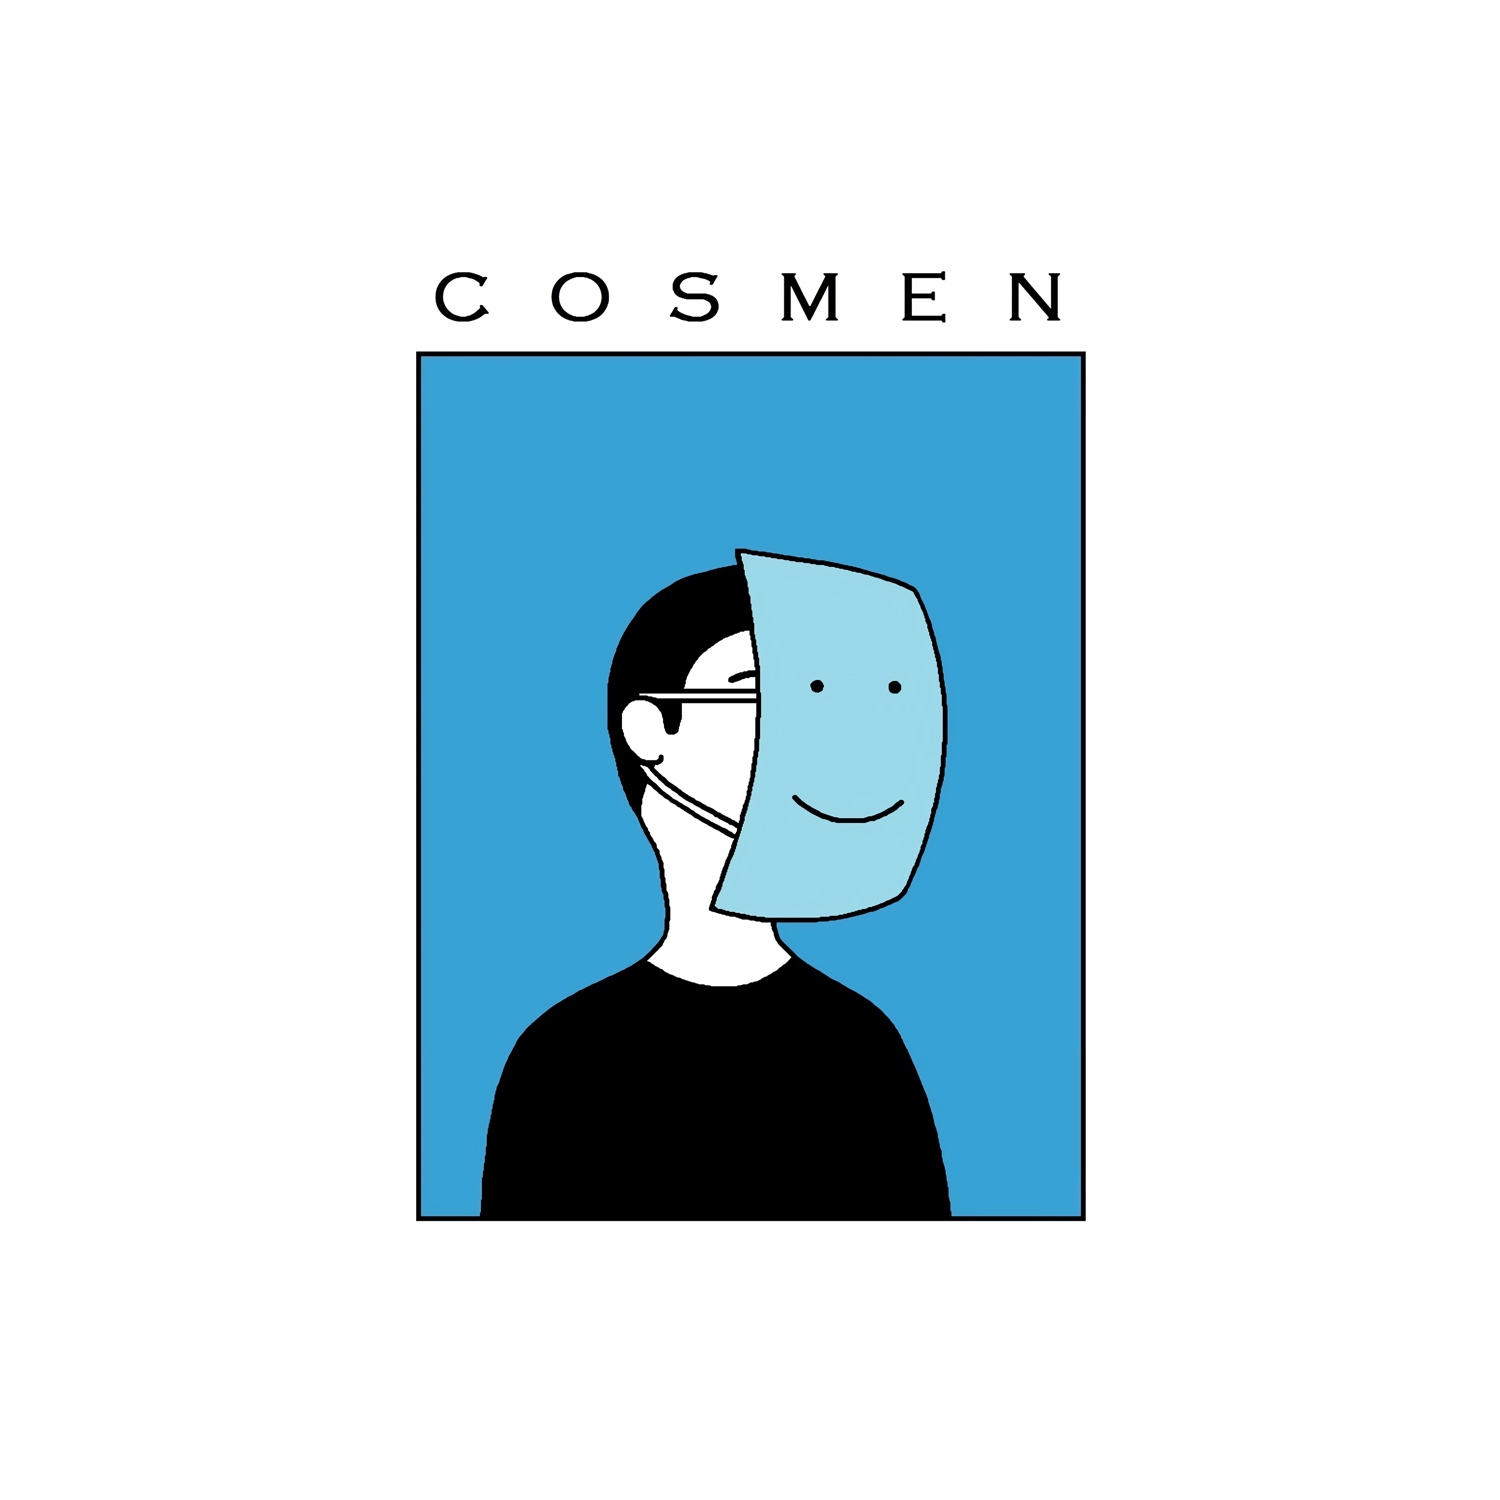 Cosmen "Cosmen" LP